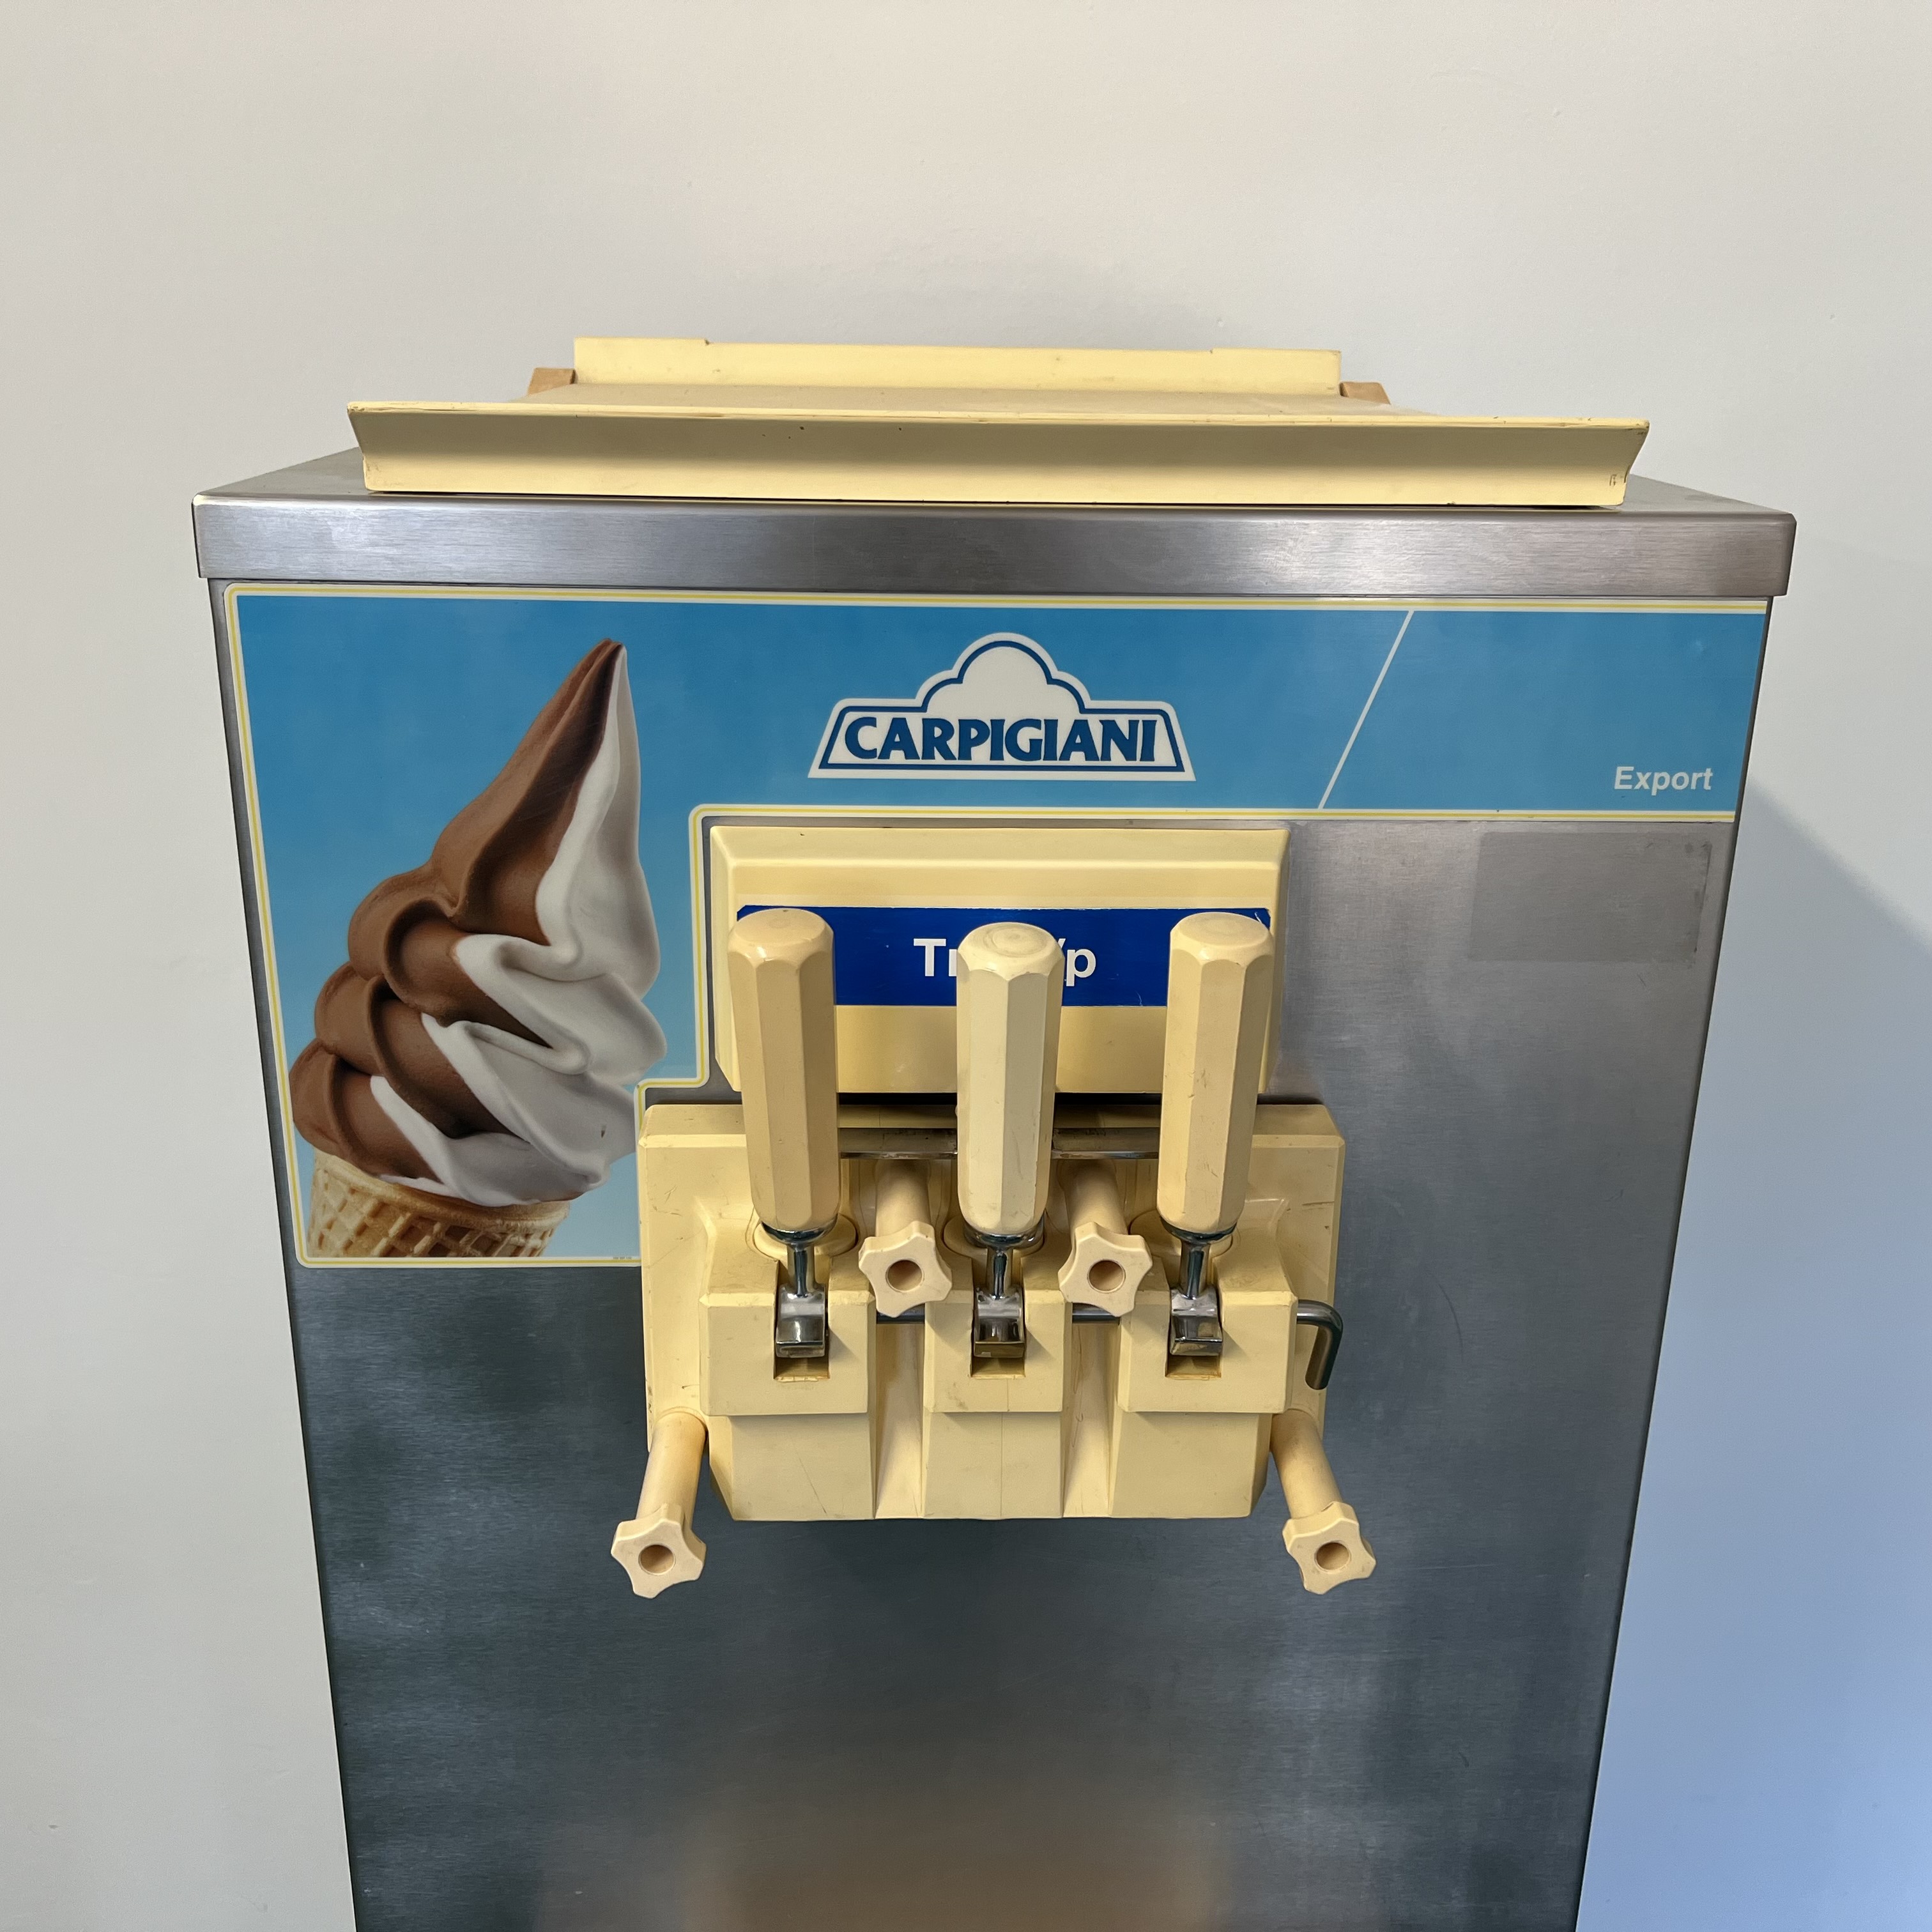 AKCIÓ! Carpigiani TRE / BP lágyfagylaltgép, lágyfagyi készítő